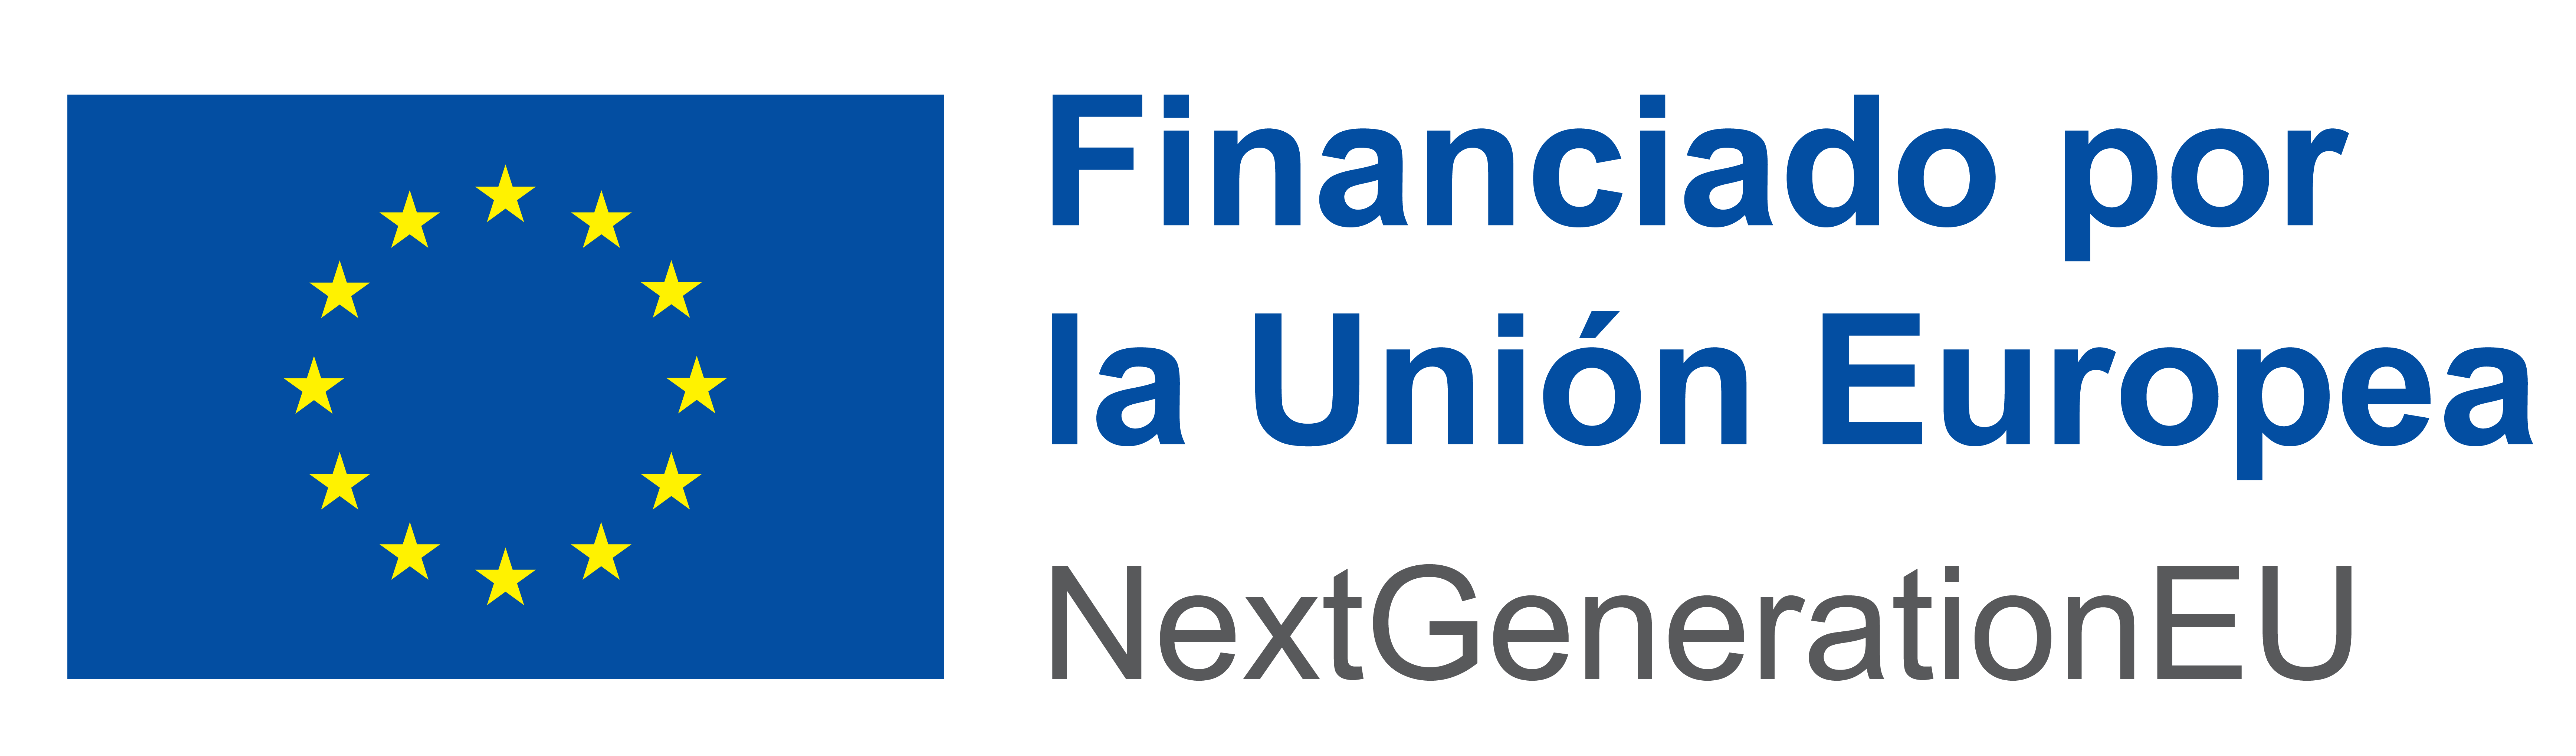 Logo Financiado por la Unión Europea - Next Generation